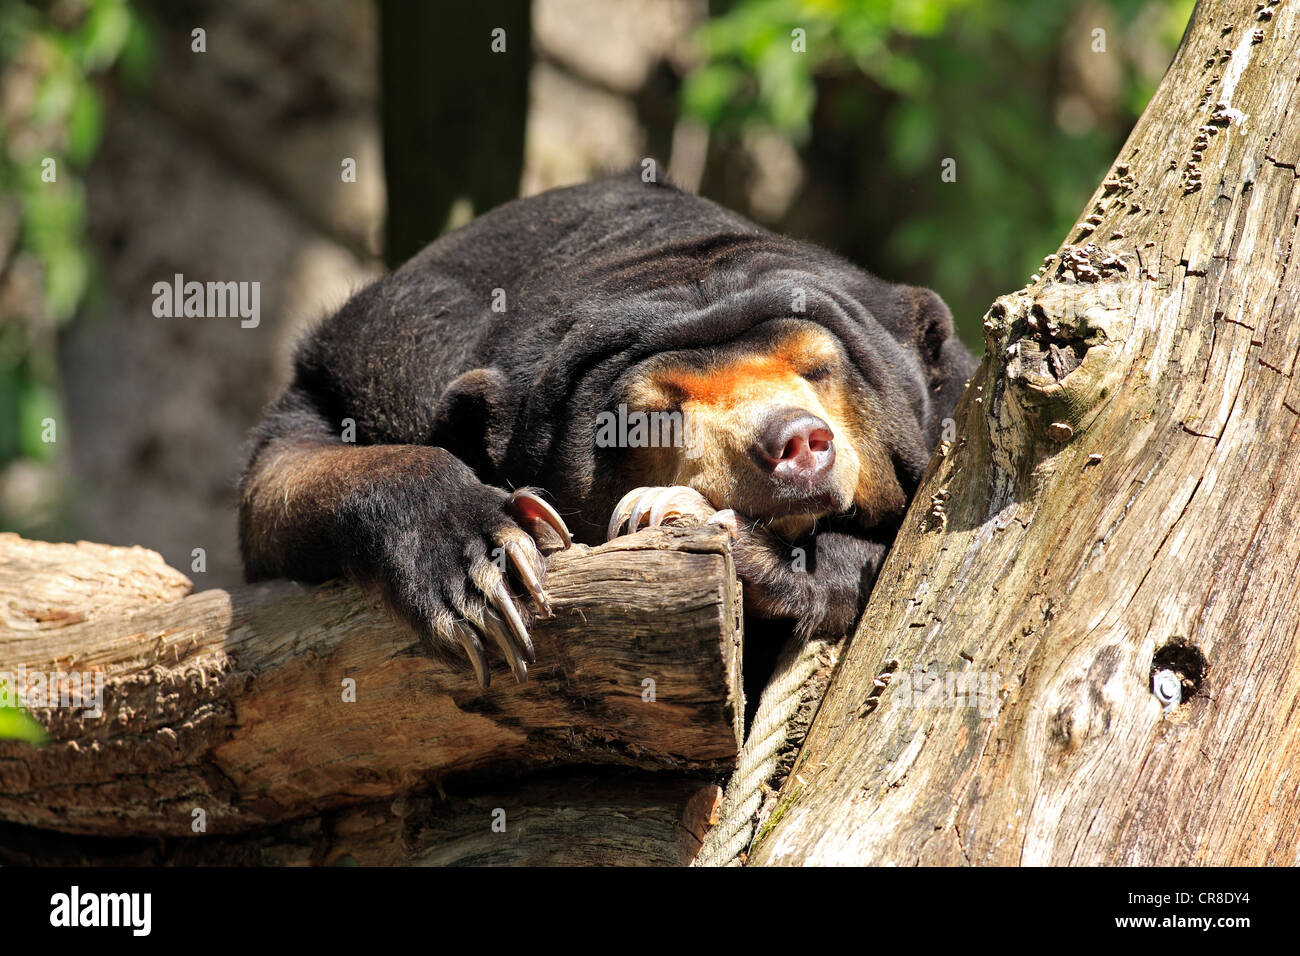 Sun bear or honey bear (Helarctos malayanus), resting, captive, Miami, Florida, USA Stock Photo